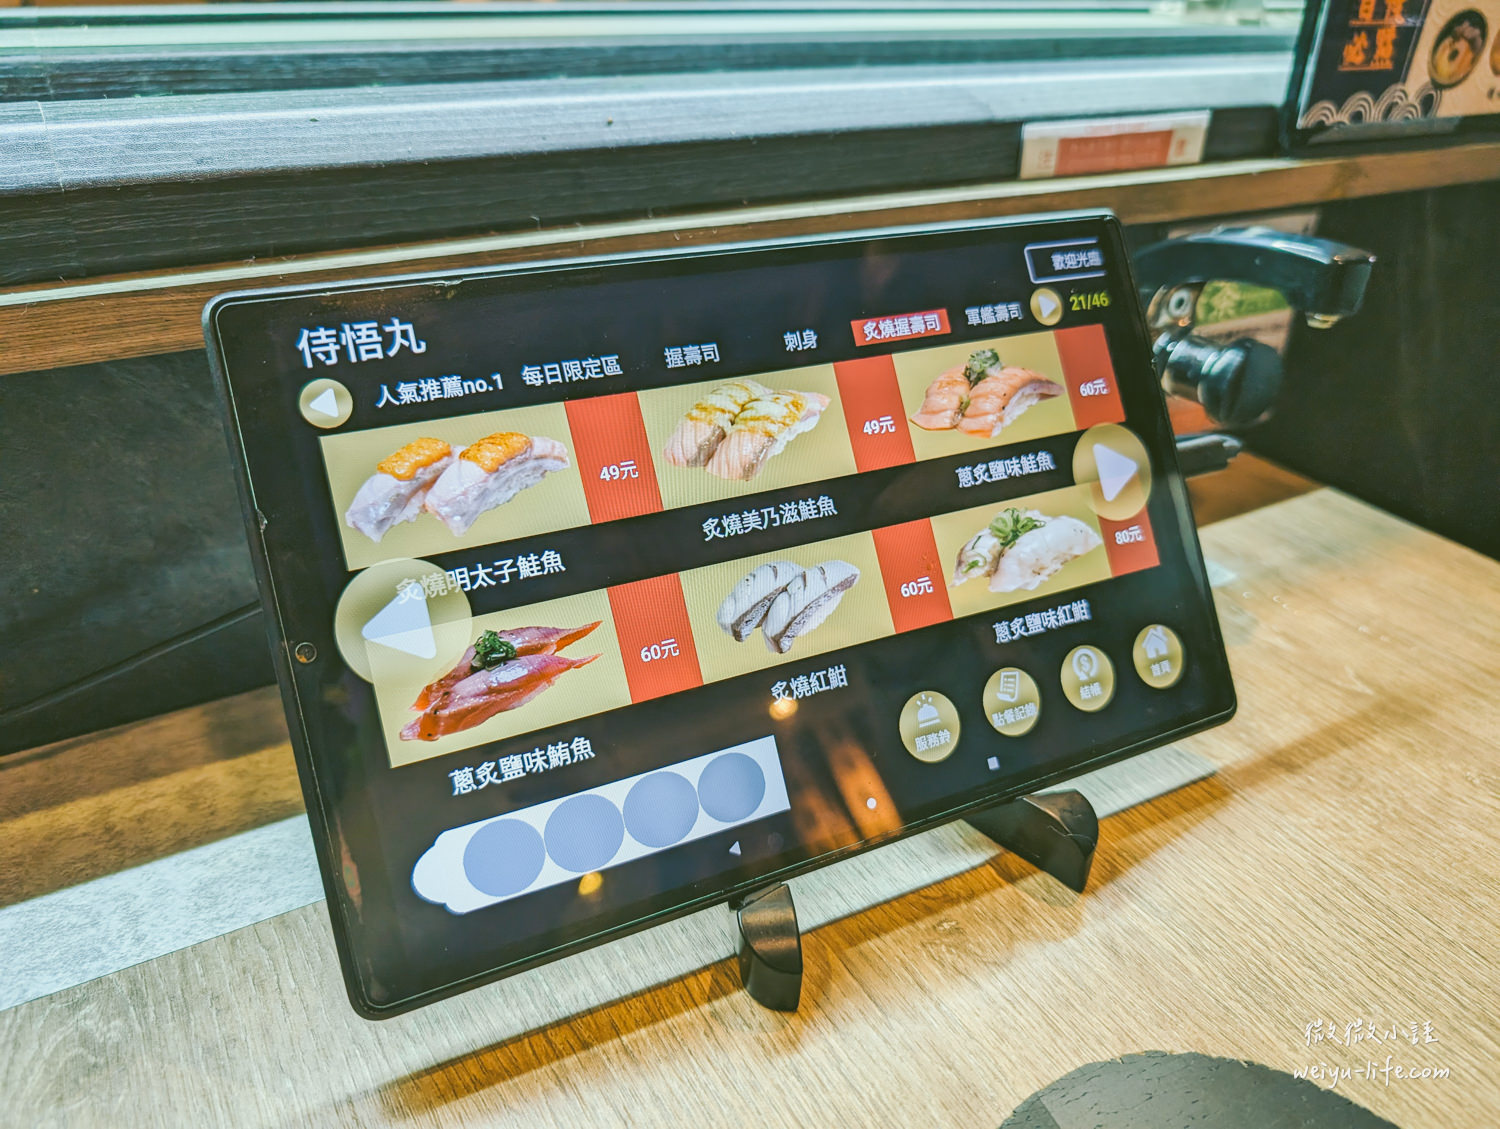 侍悟丸迴轉壽司使用平板點餐